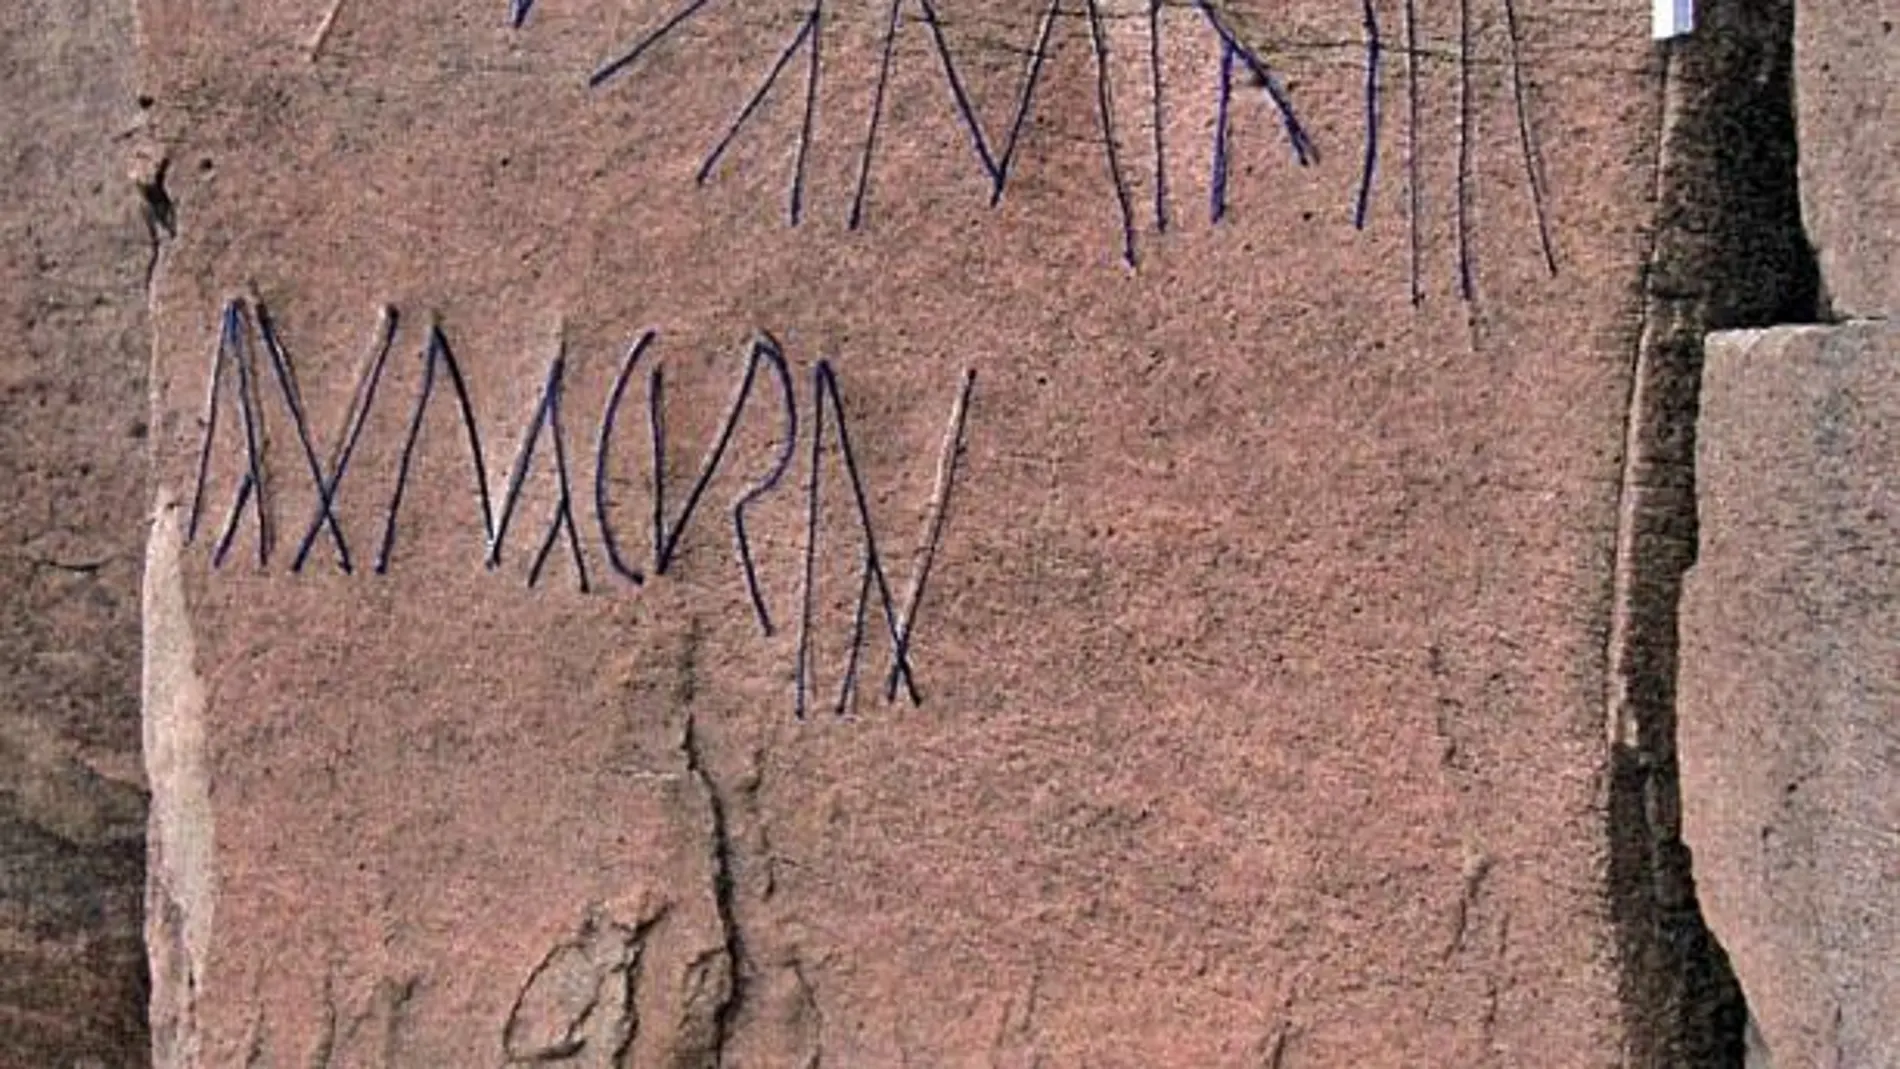 Panel en el que se inscribió a la vez en caracteres líbico-latinos y líbico-bereberes la misma expresión: "hijo de Makuran"